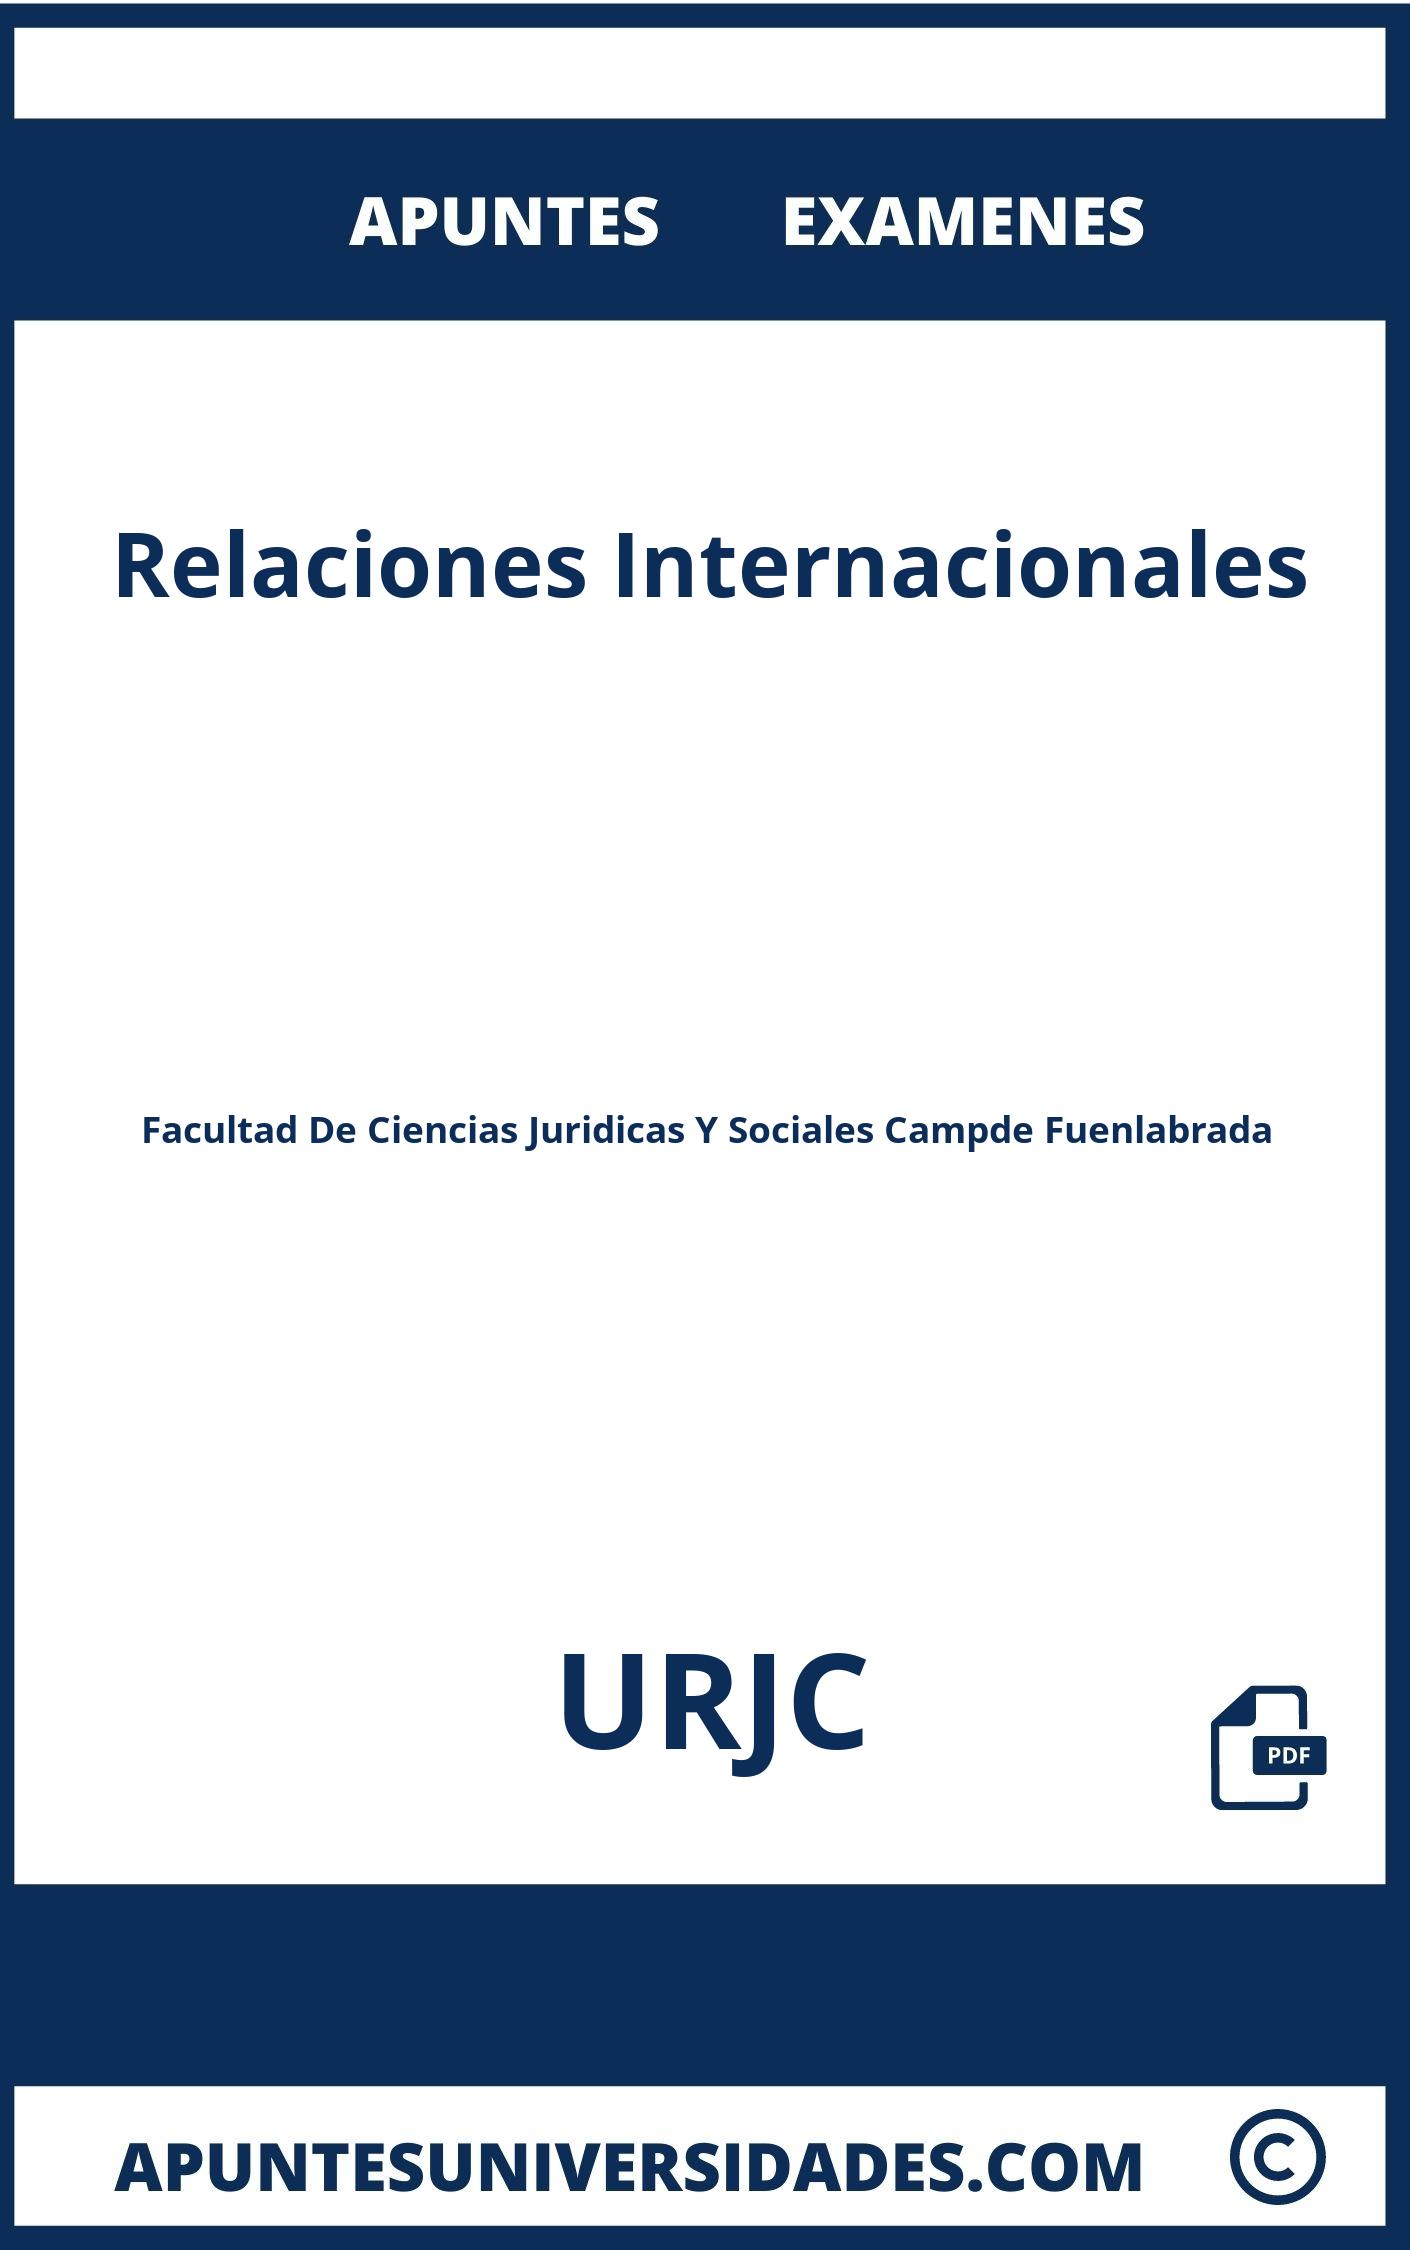 Relaciones Internacionales URJC Apuntes Examenes